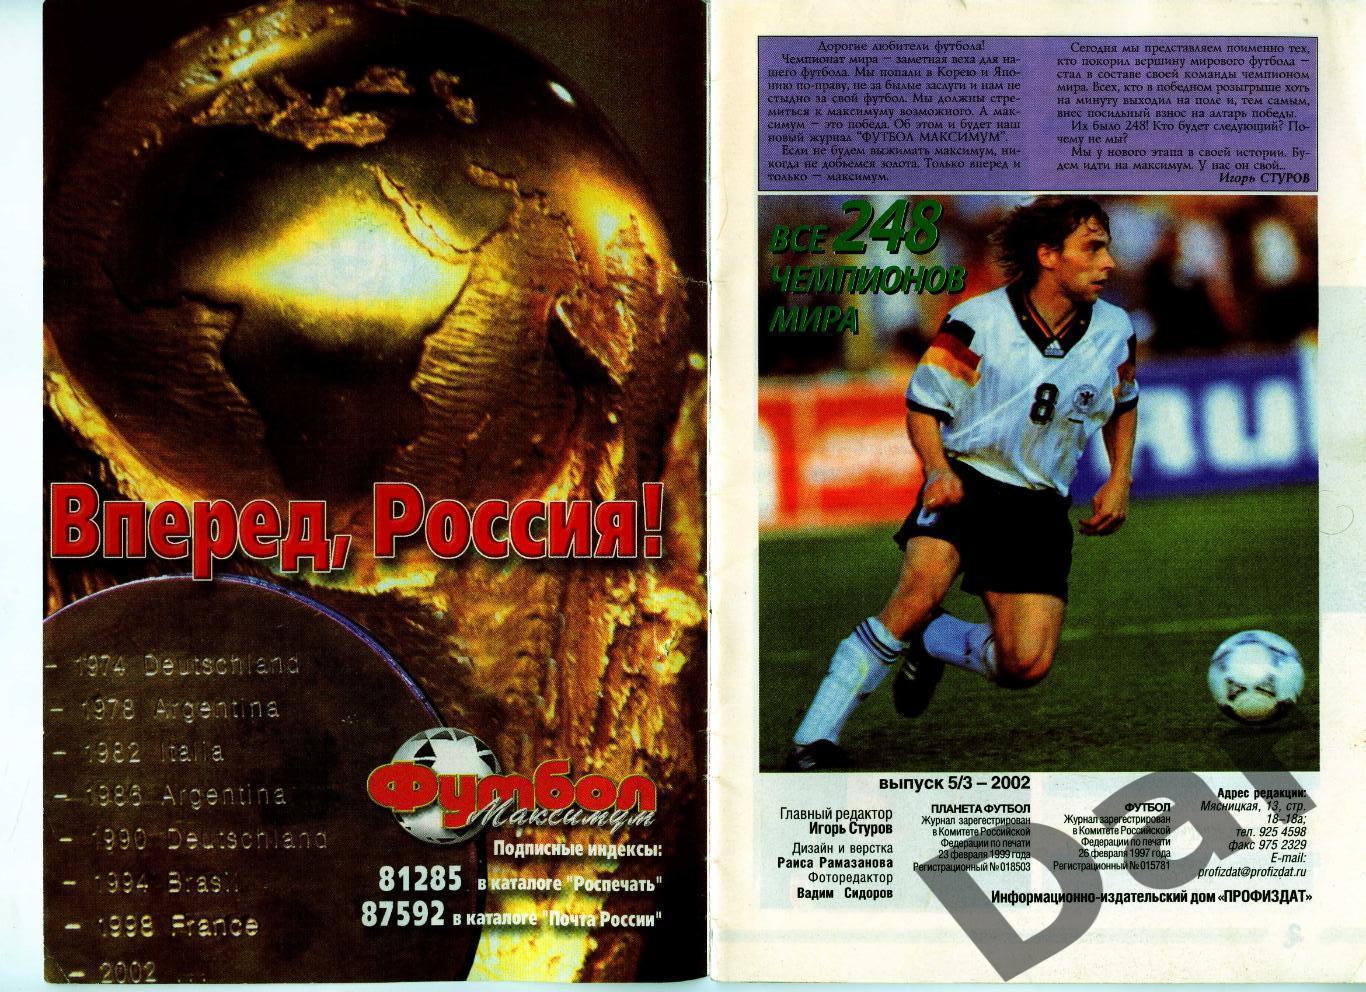 Футбол изд-ва Профиздат выпуск 5/3 2002 г. Все чемпионы мира 1